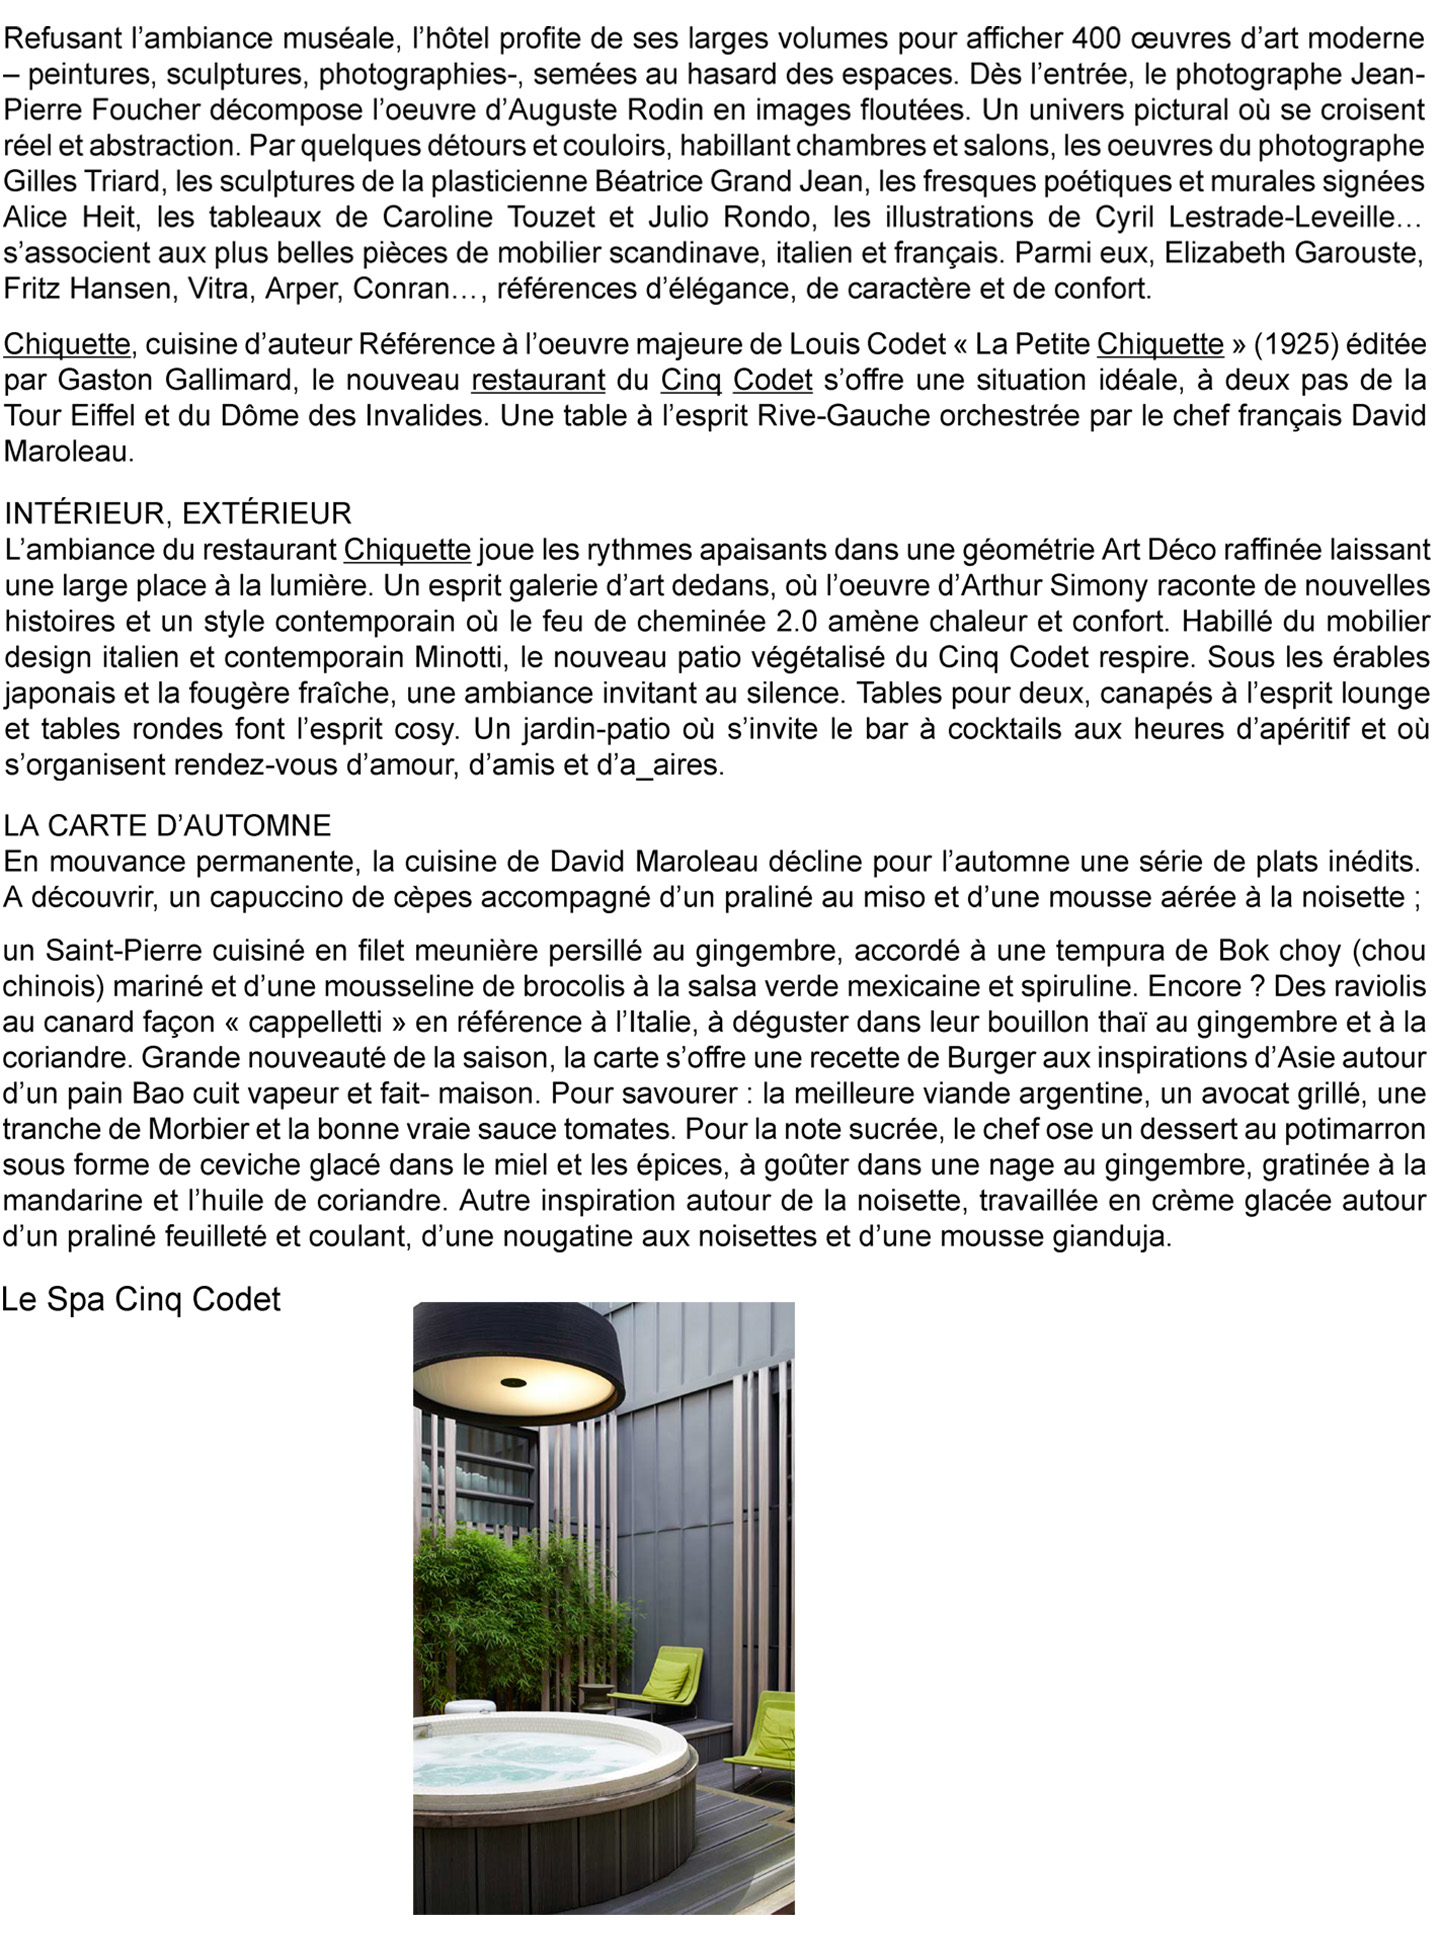 Article sur la cinq codet paris, hotel de luxe au centre de paris rénové par le studio d'architecture d'intérieur jean-philippe nuel, chambre avec vue panoramique et spa